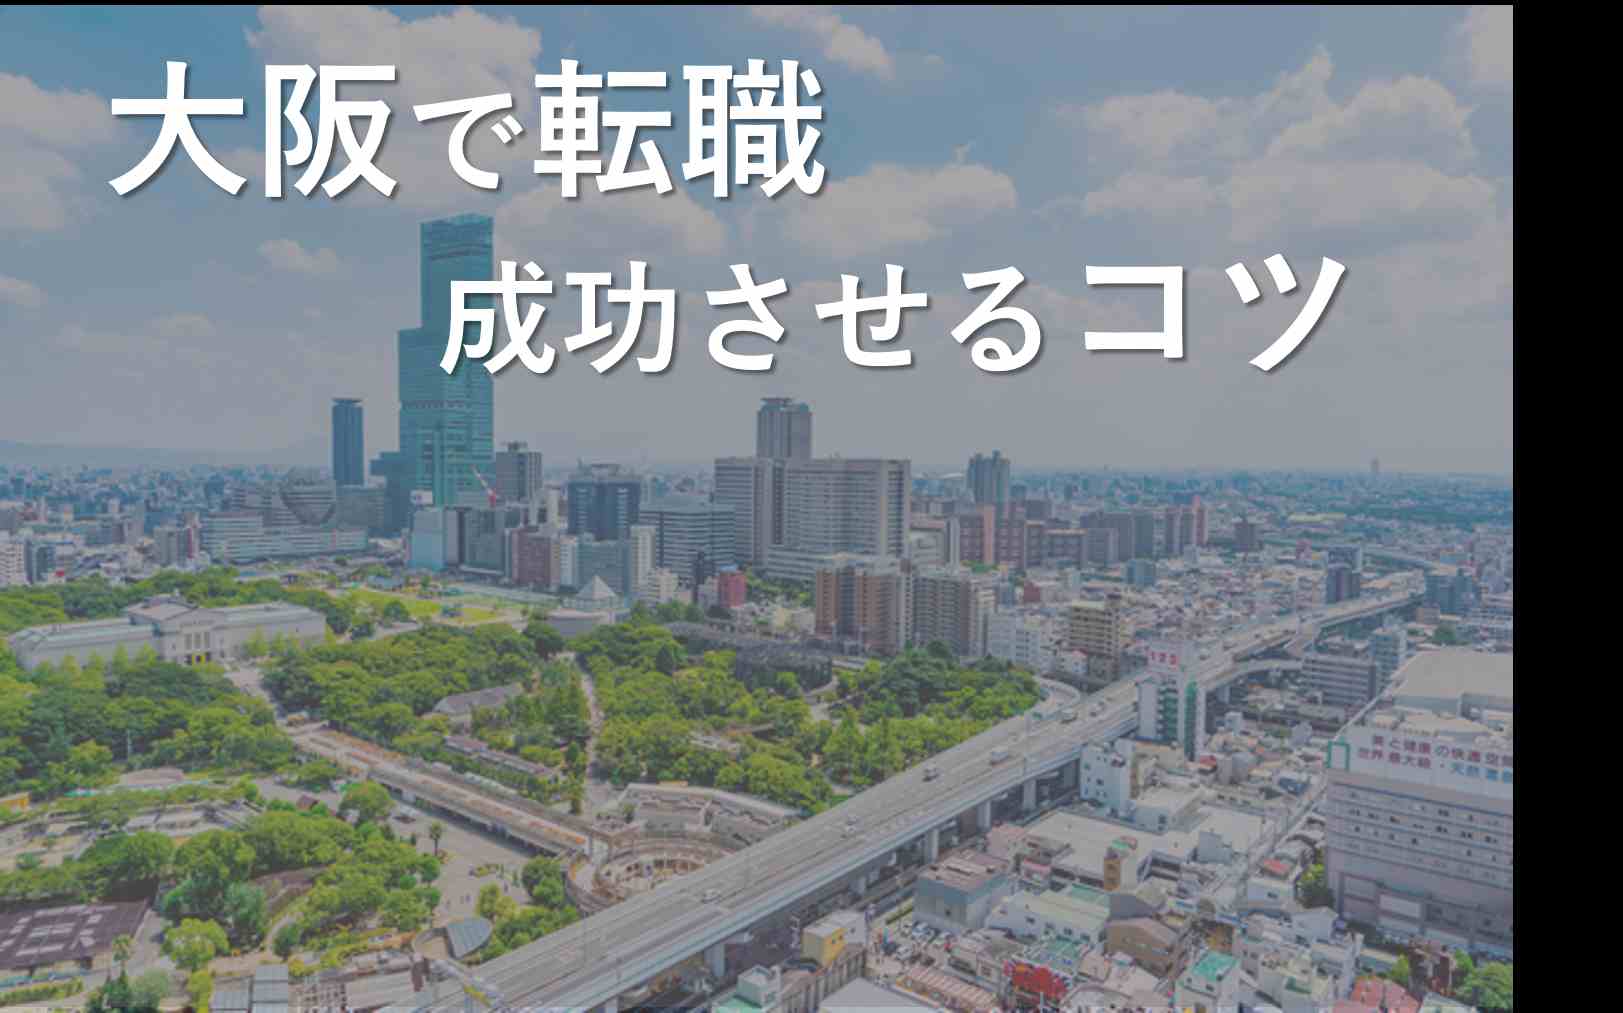 大阪への転職や移住に役立つアドバイス